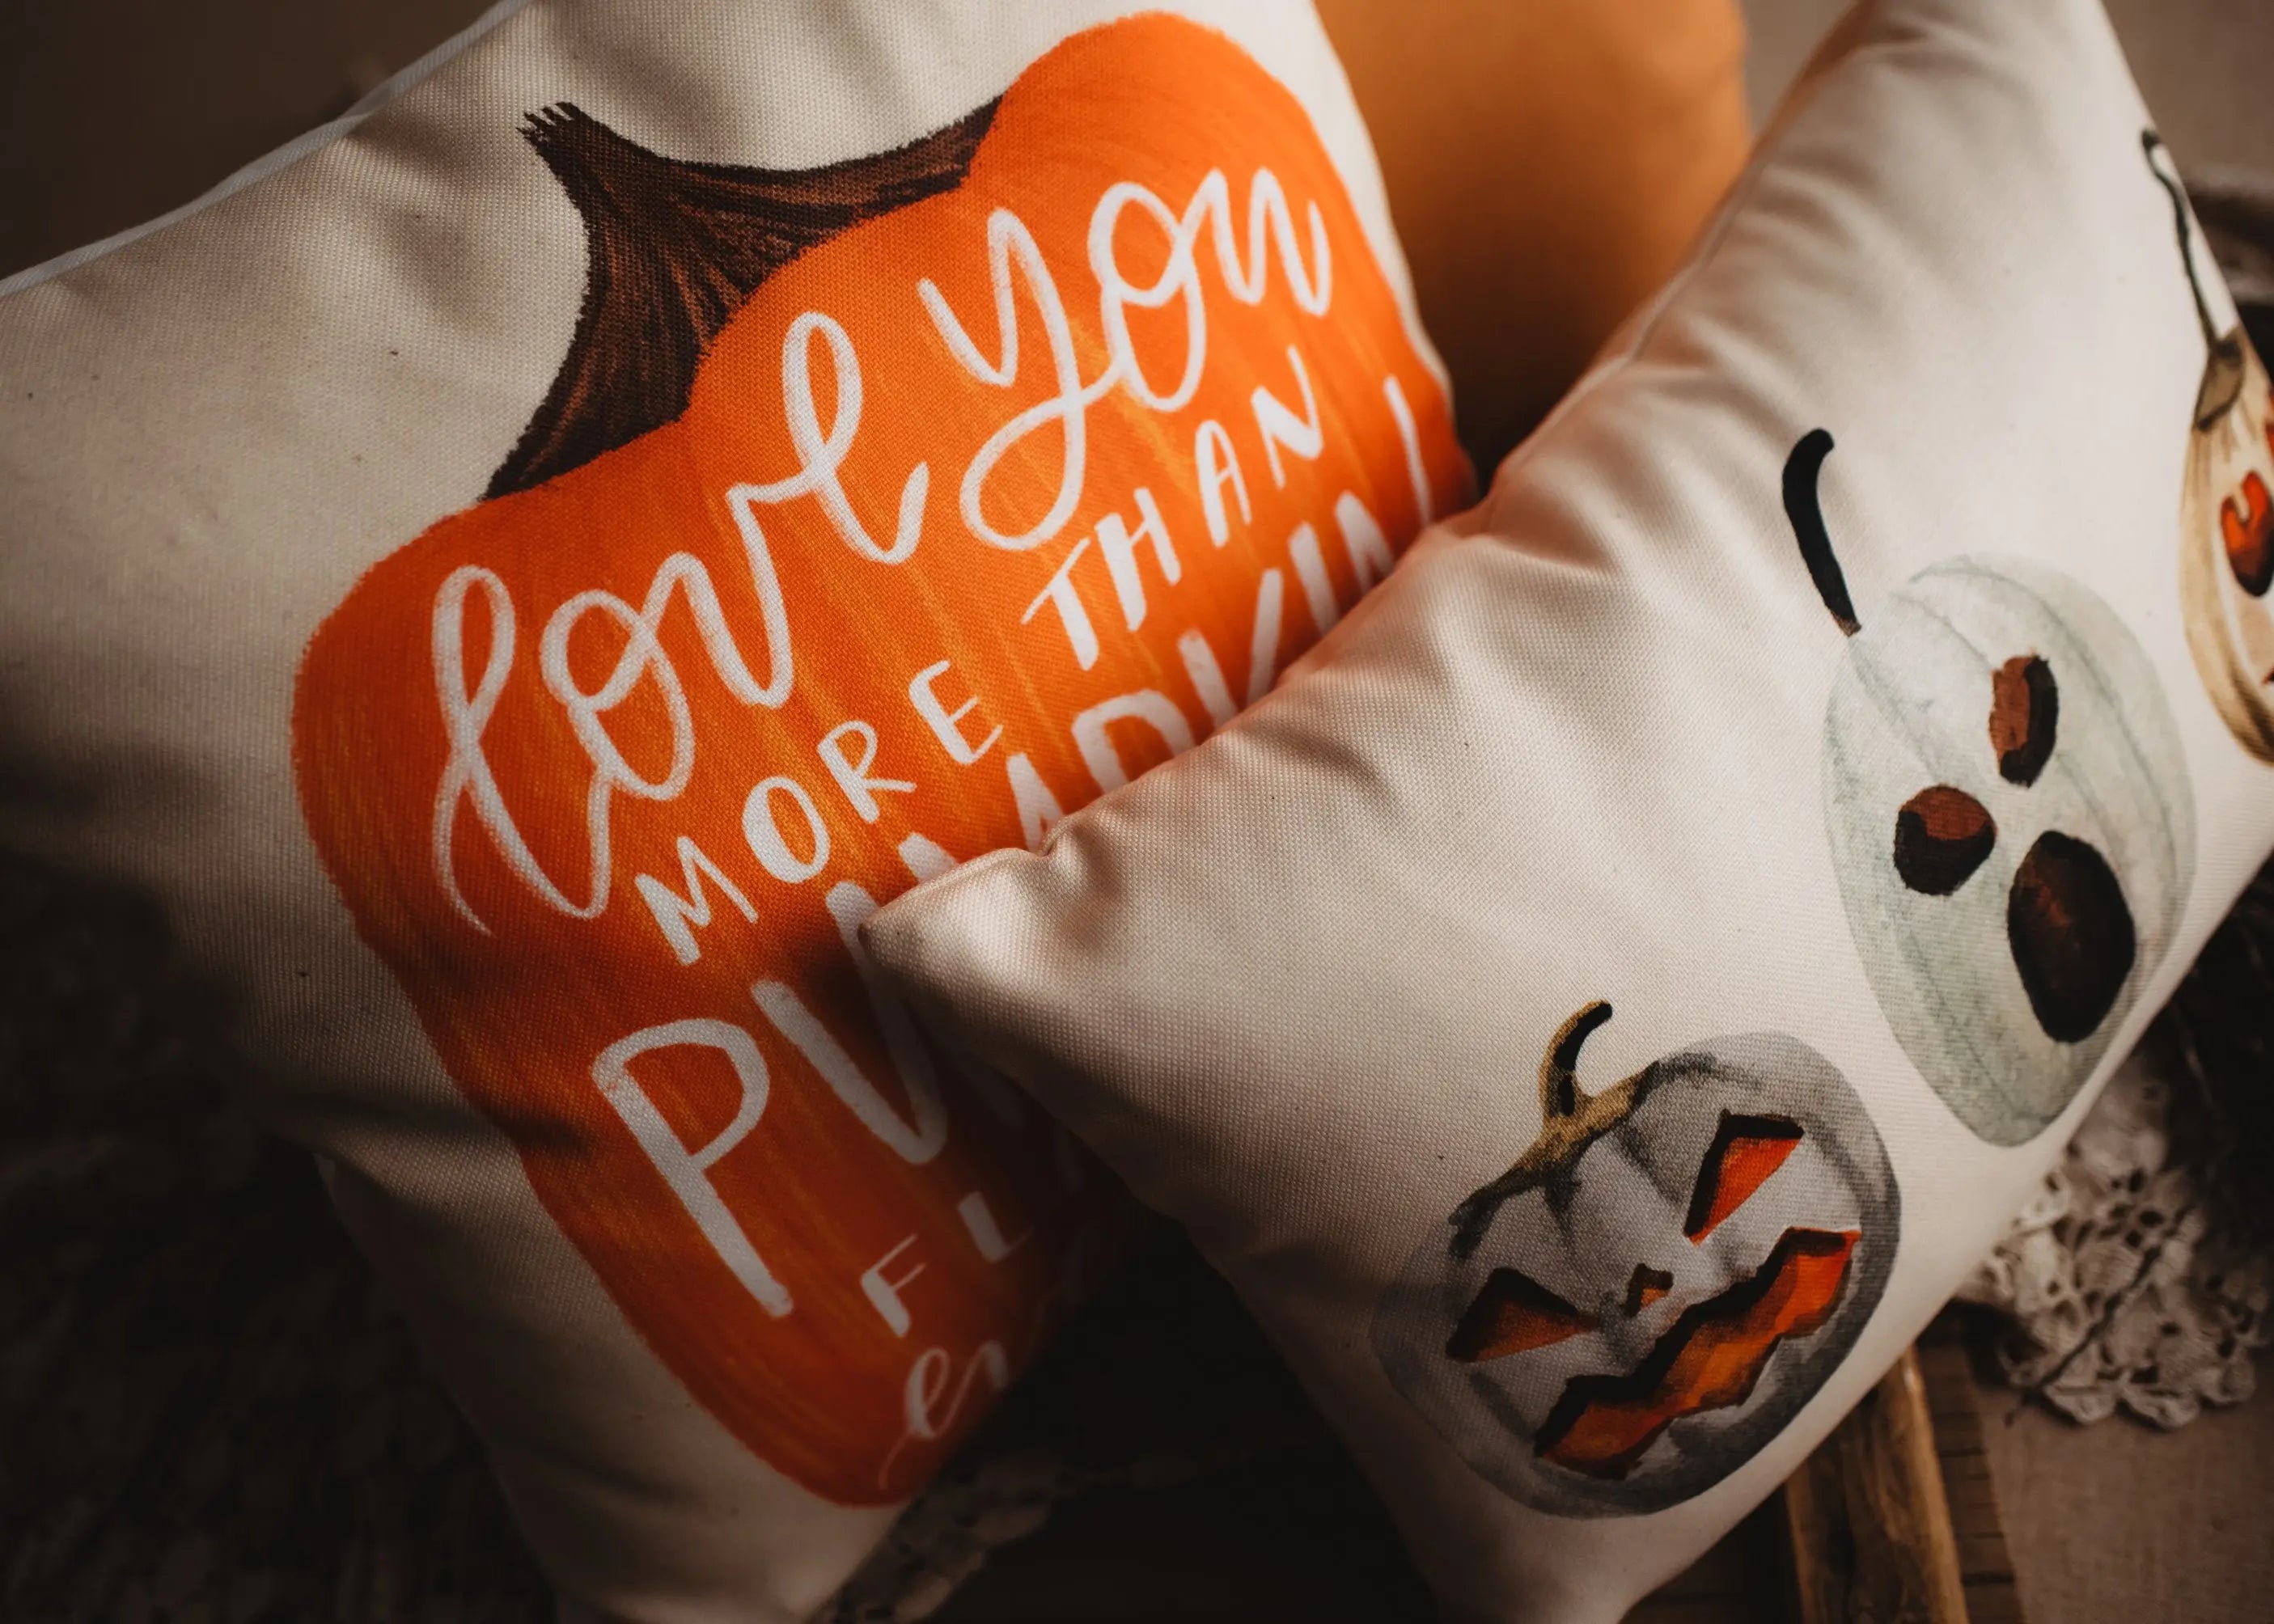 Primitive Pumpkin Decor Pillow Cover | Thanksgiving Décor | Farmhouse Pillows | Country Decor | Fall Throw Pillows | Cute Throw Pillows